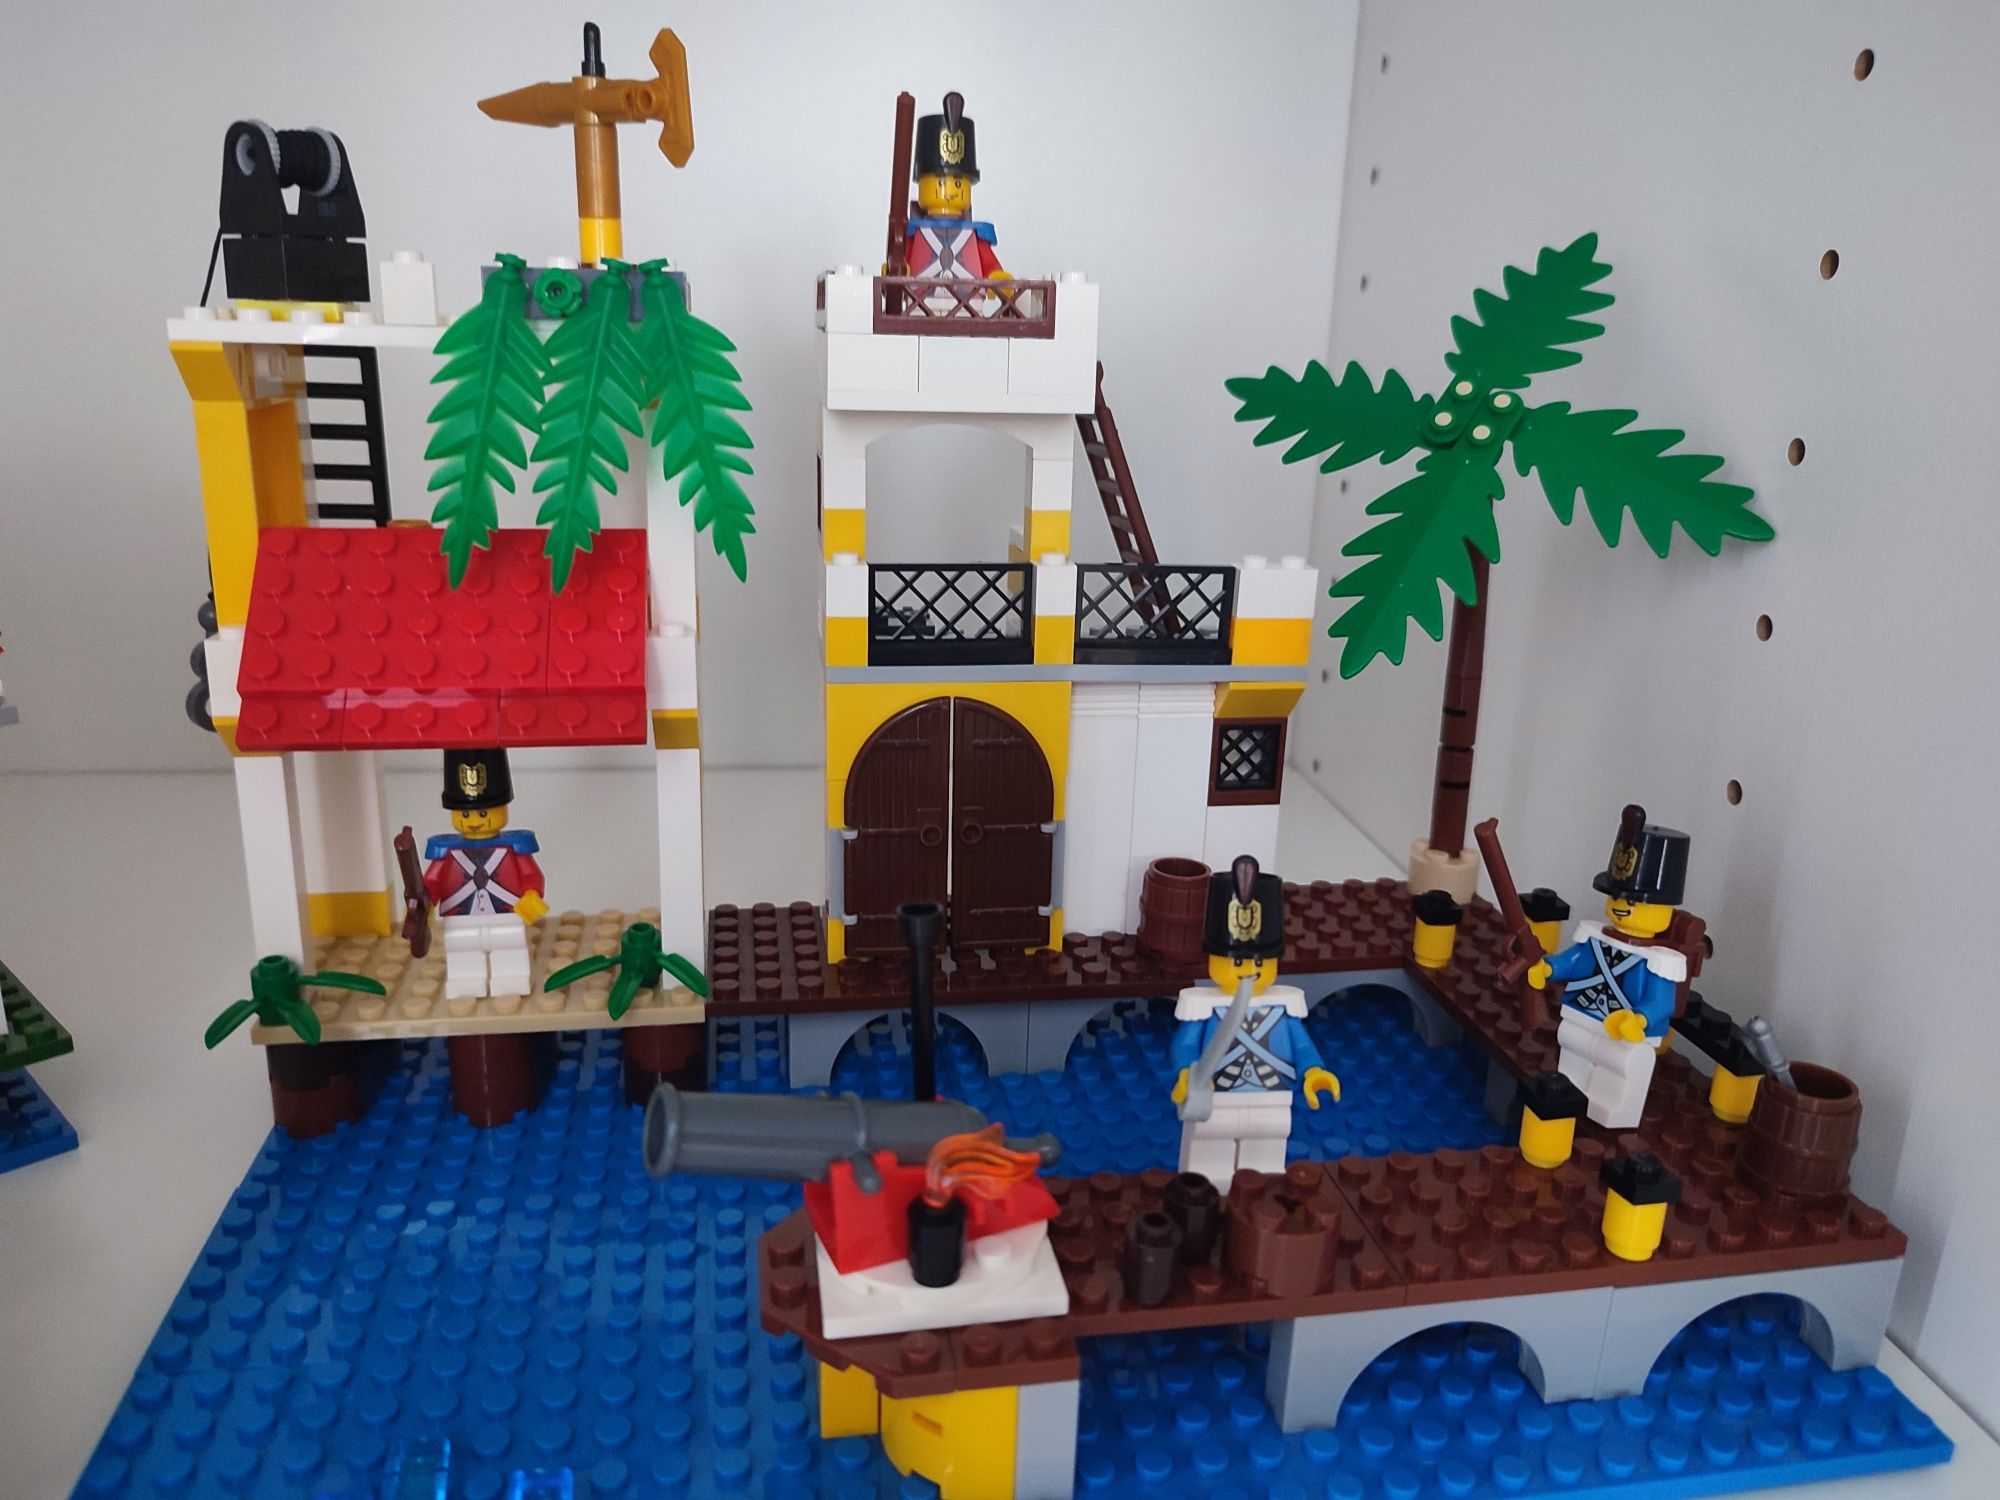 Klocki typu LEGO Imperial Pirates ogromny zestaw